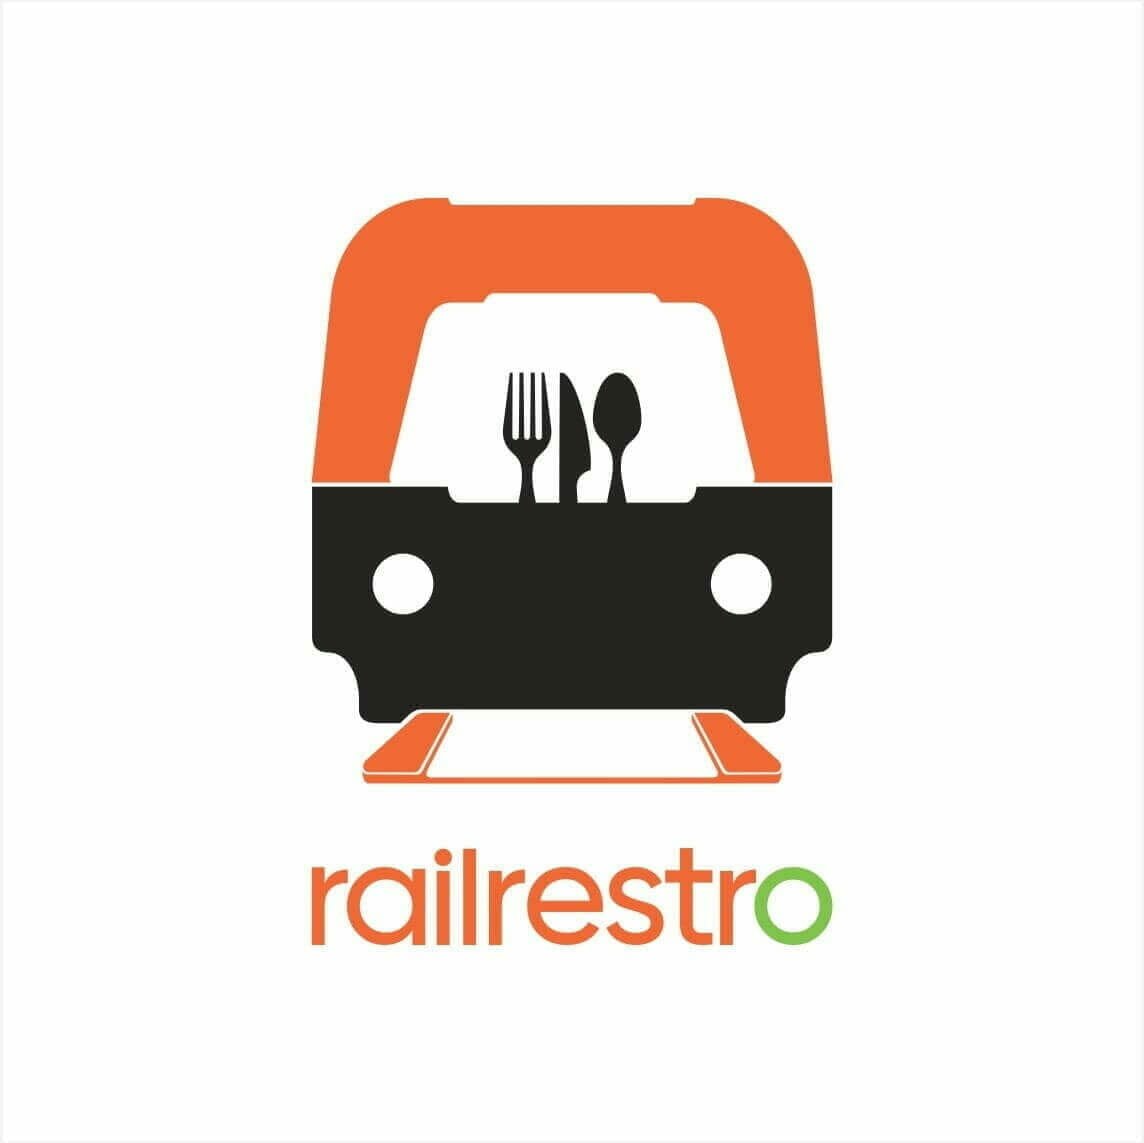 Railrestro App Offer: Get Flat 100% OFF on 1st Order